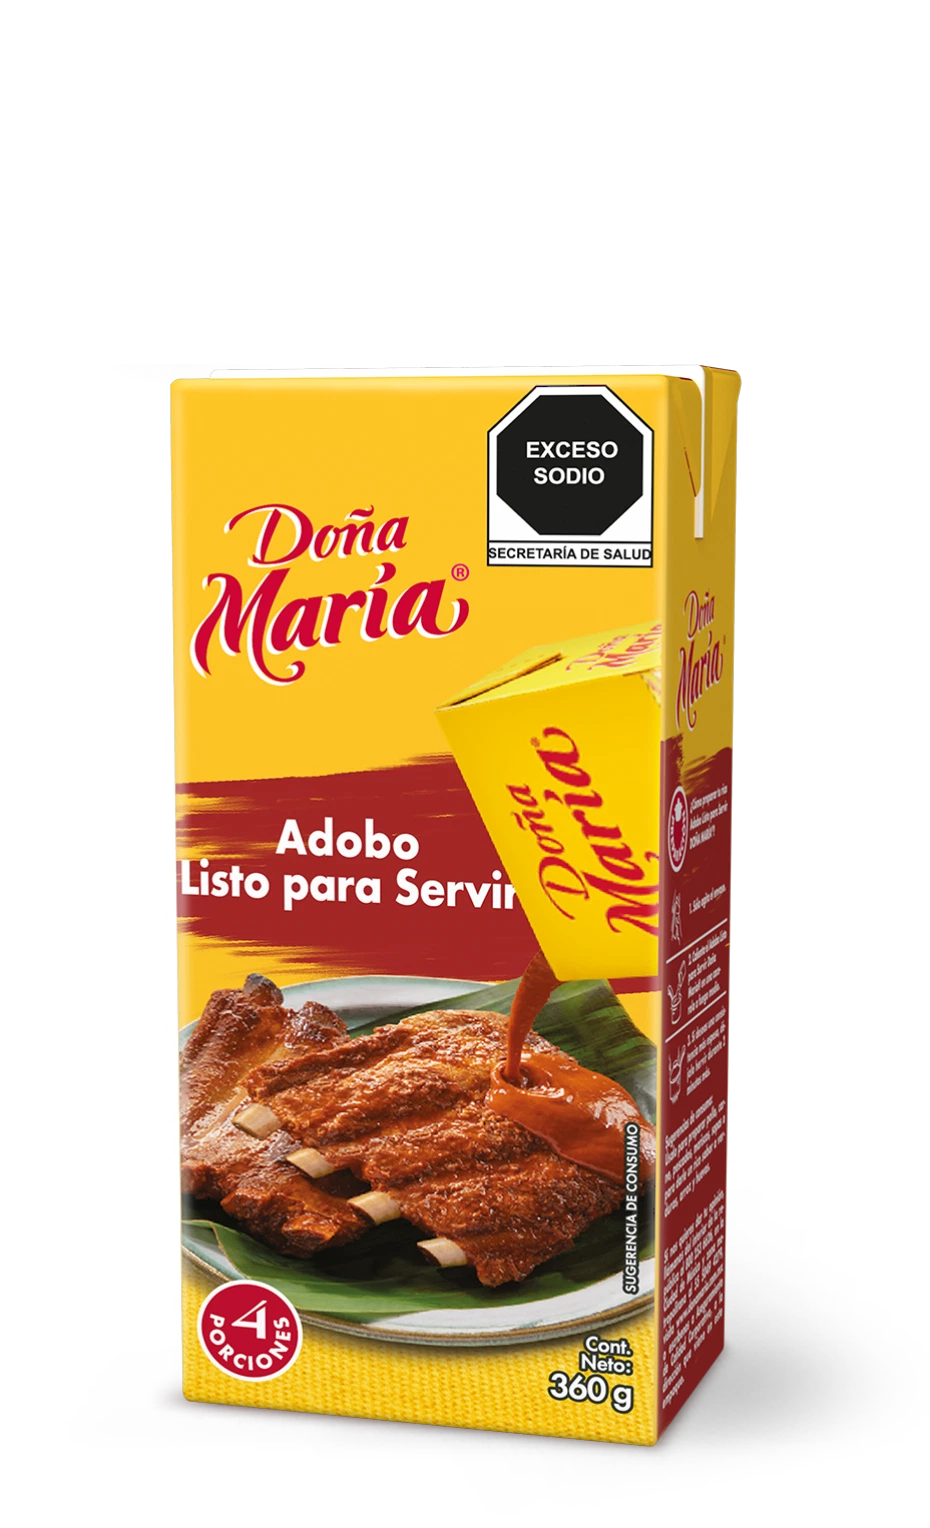 Product Mole Adobo Doña María ®